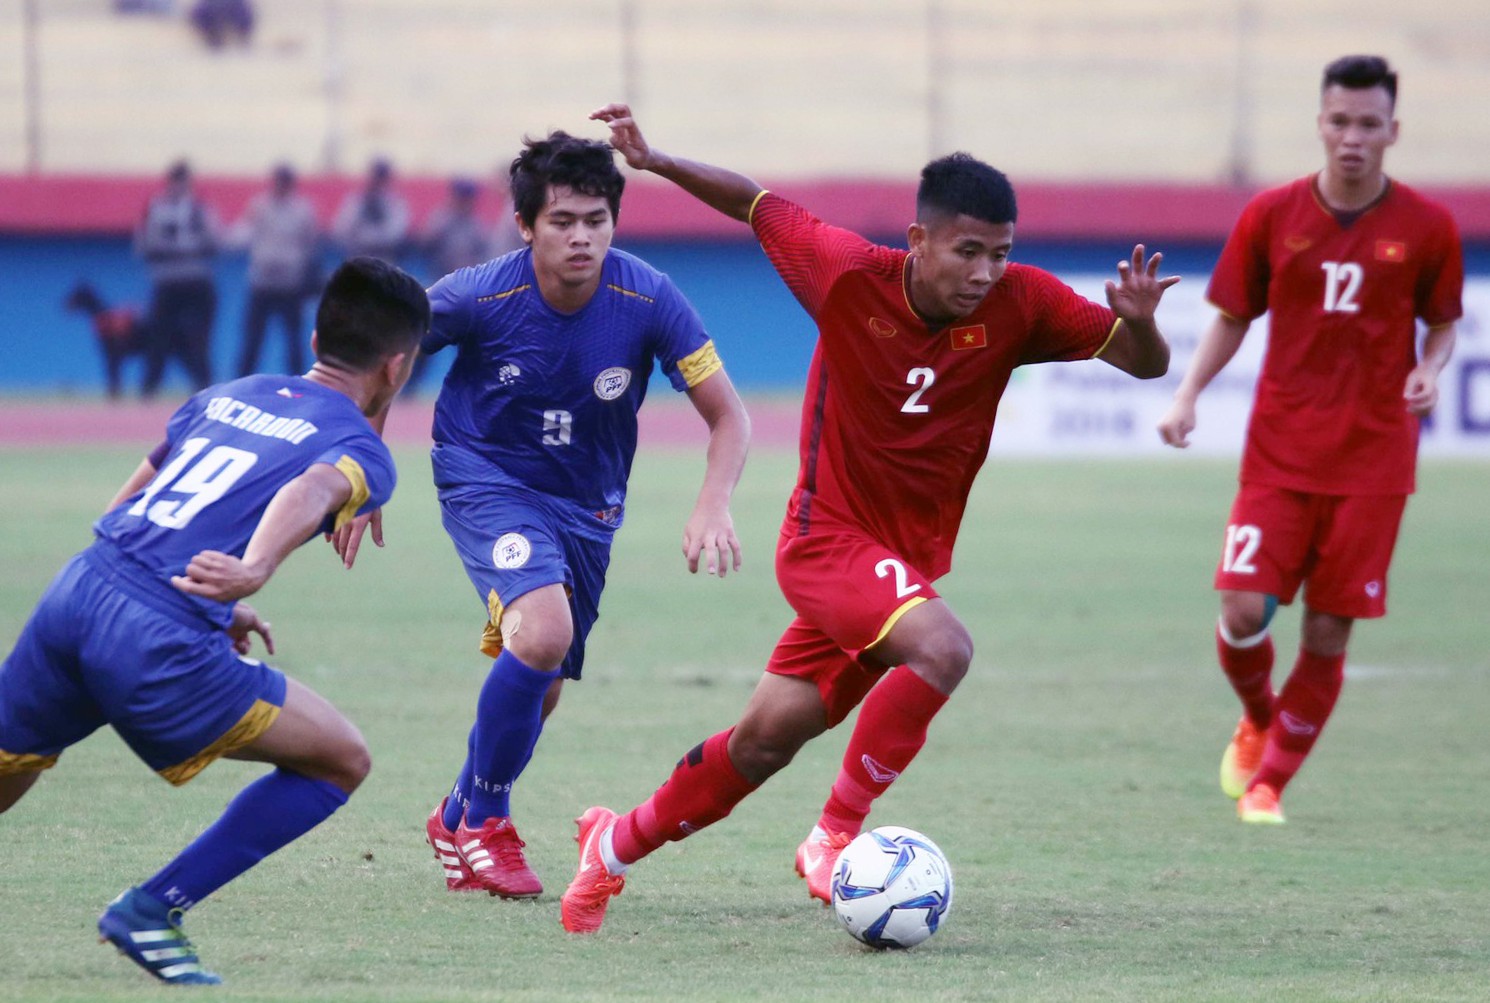 Thủ môn xuất sắc đẩy penalty, U19 Việt Nam vượt Thái Lan ở bảng xếp hạng AFF U19  - Ảnh 5.